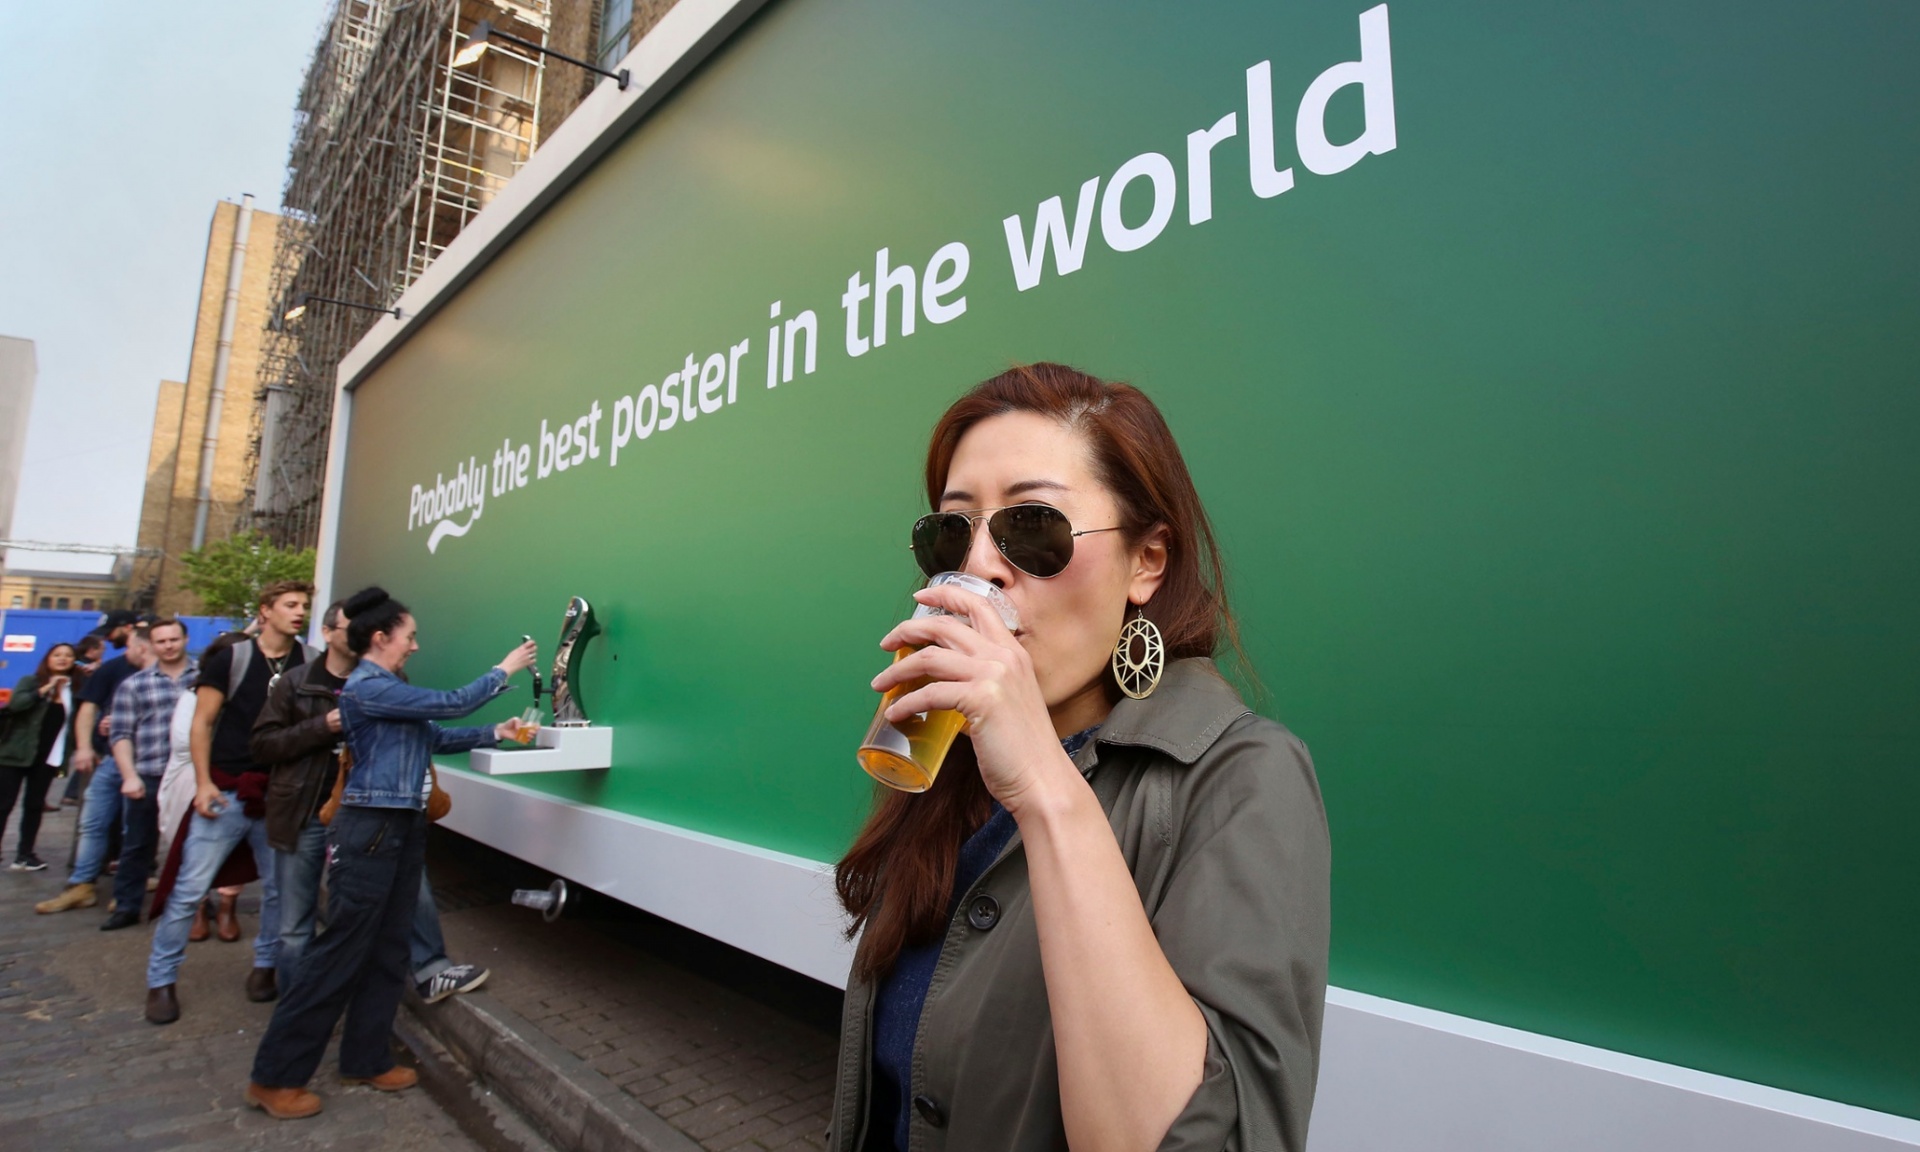 Carlsberg dévoile le meilleur poster du monde